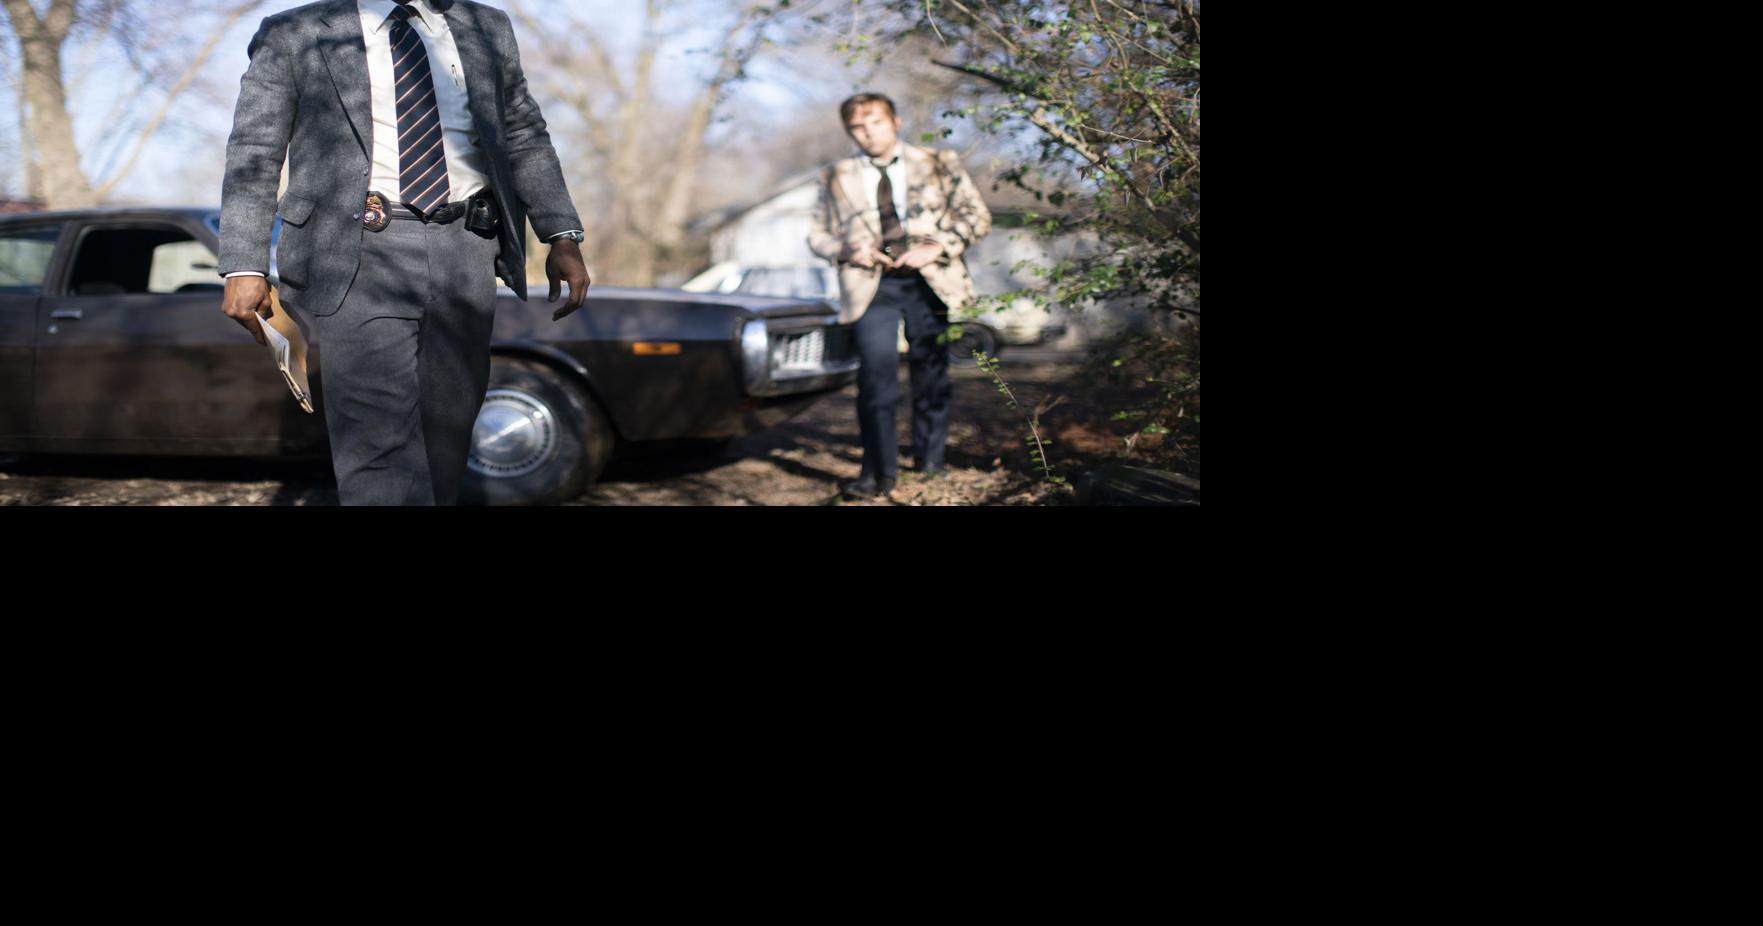 'True Detective' New season captivates, thanks to star Mahershala Ali